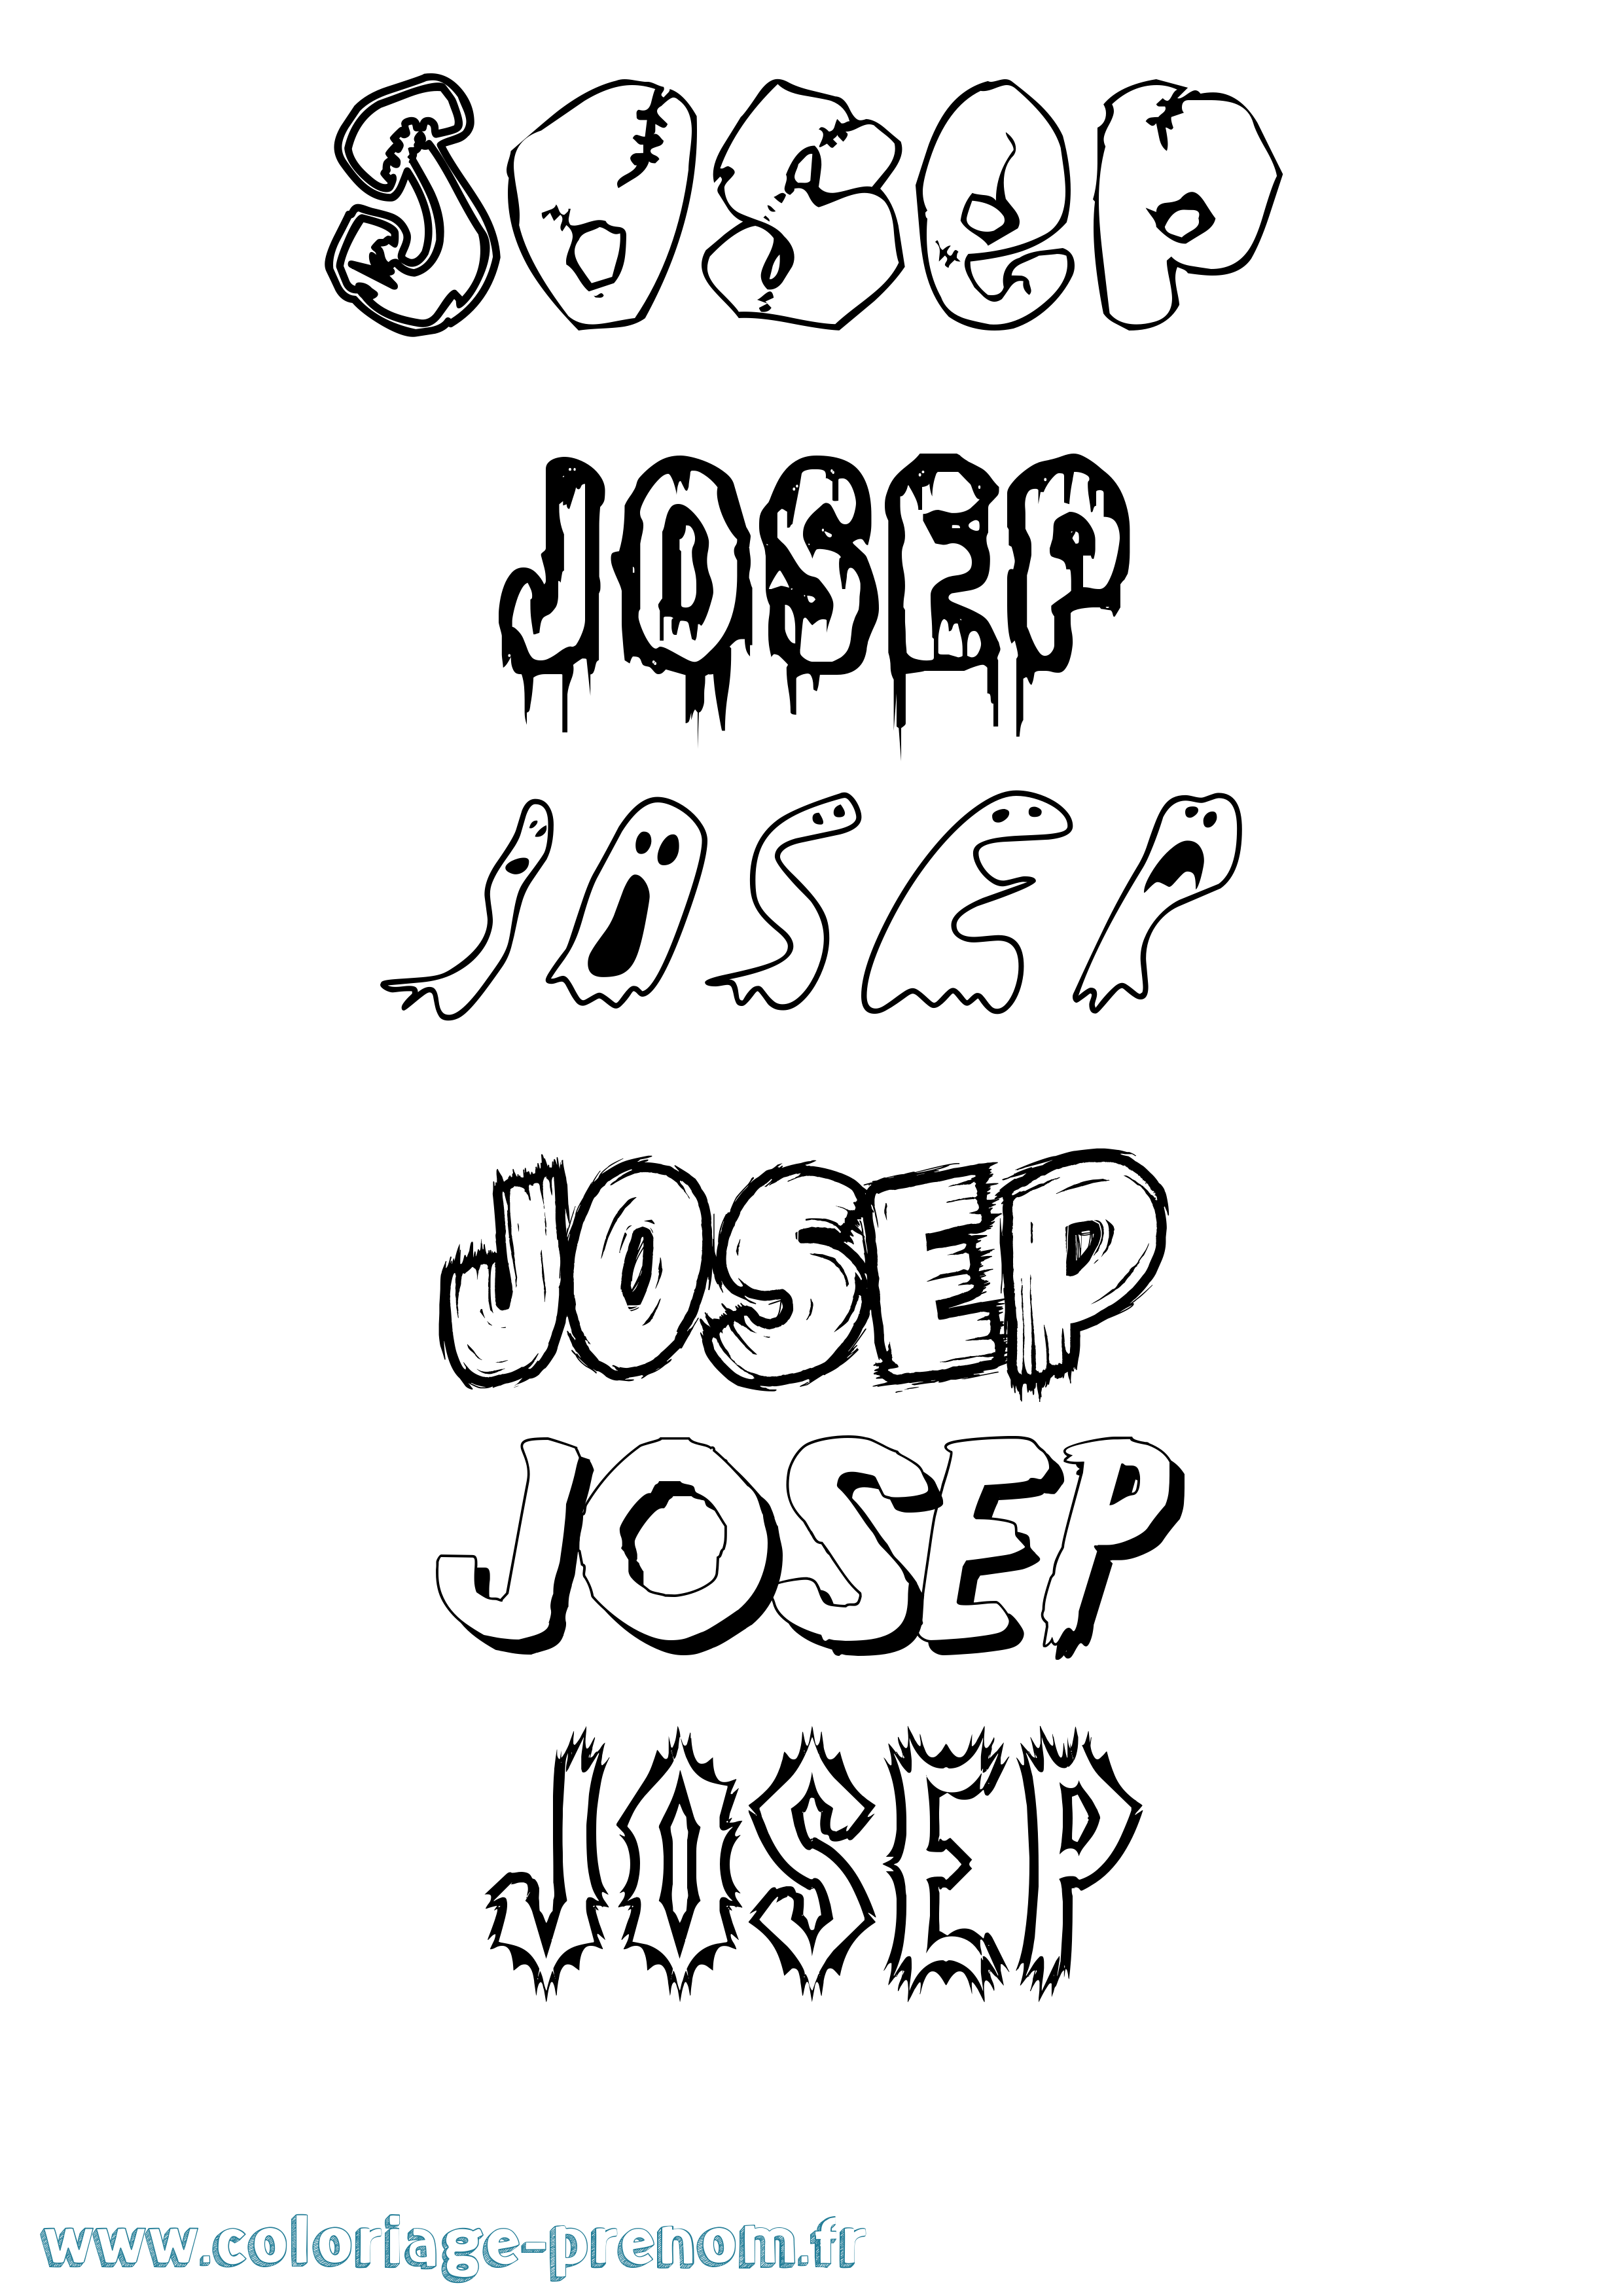 Coloriage prénom Josep Frisson